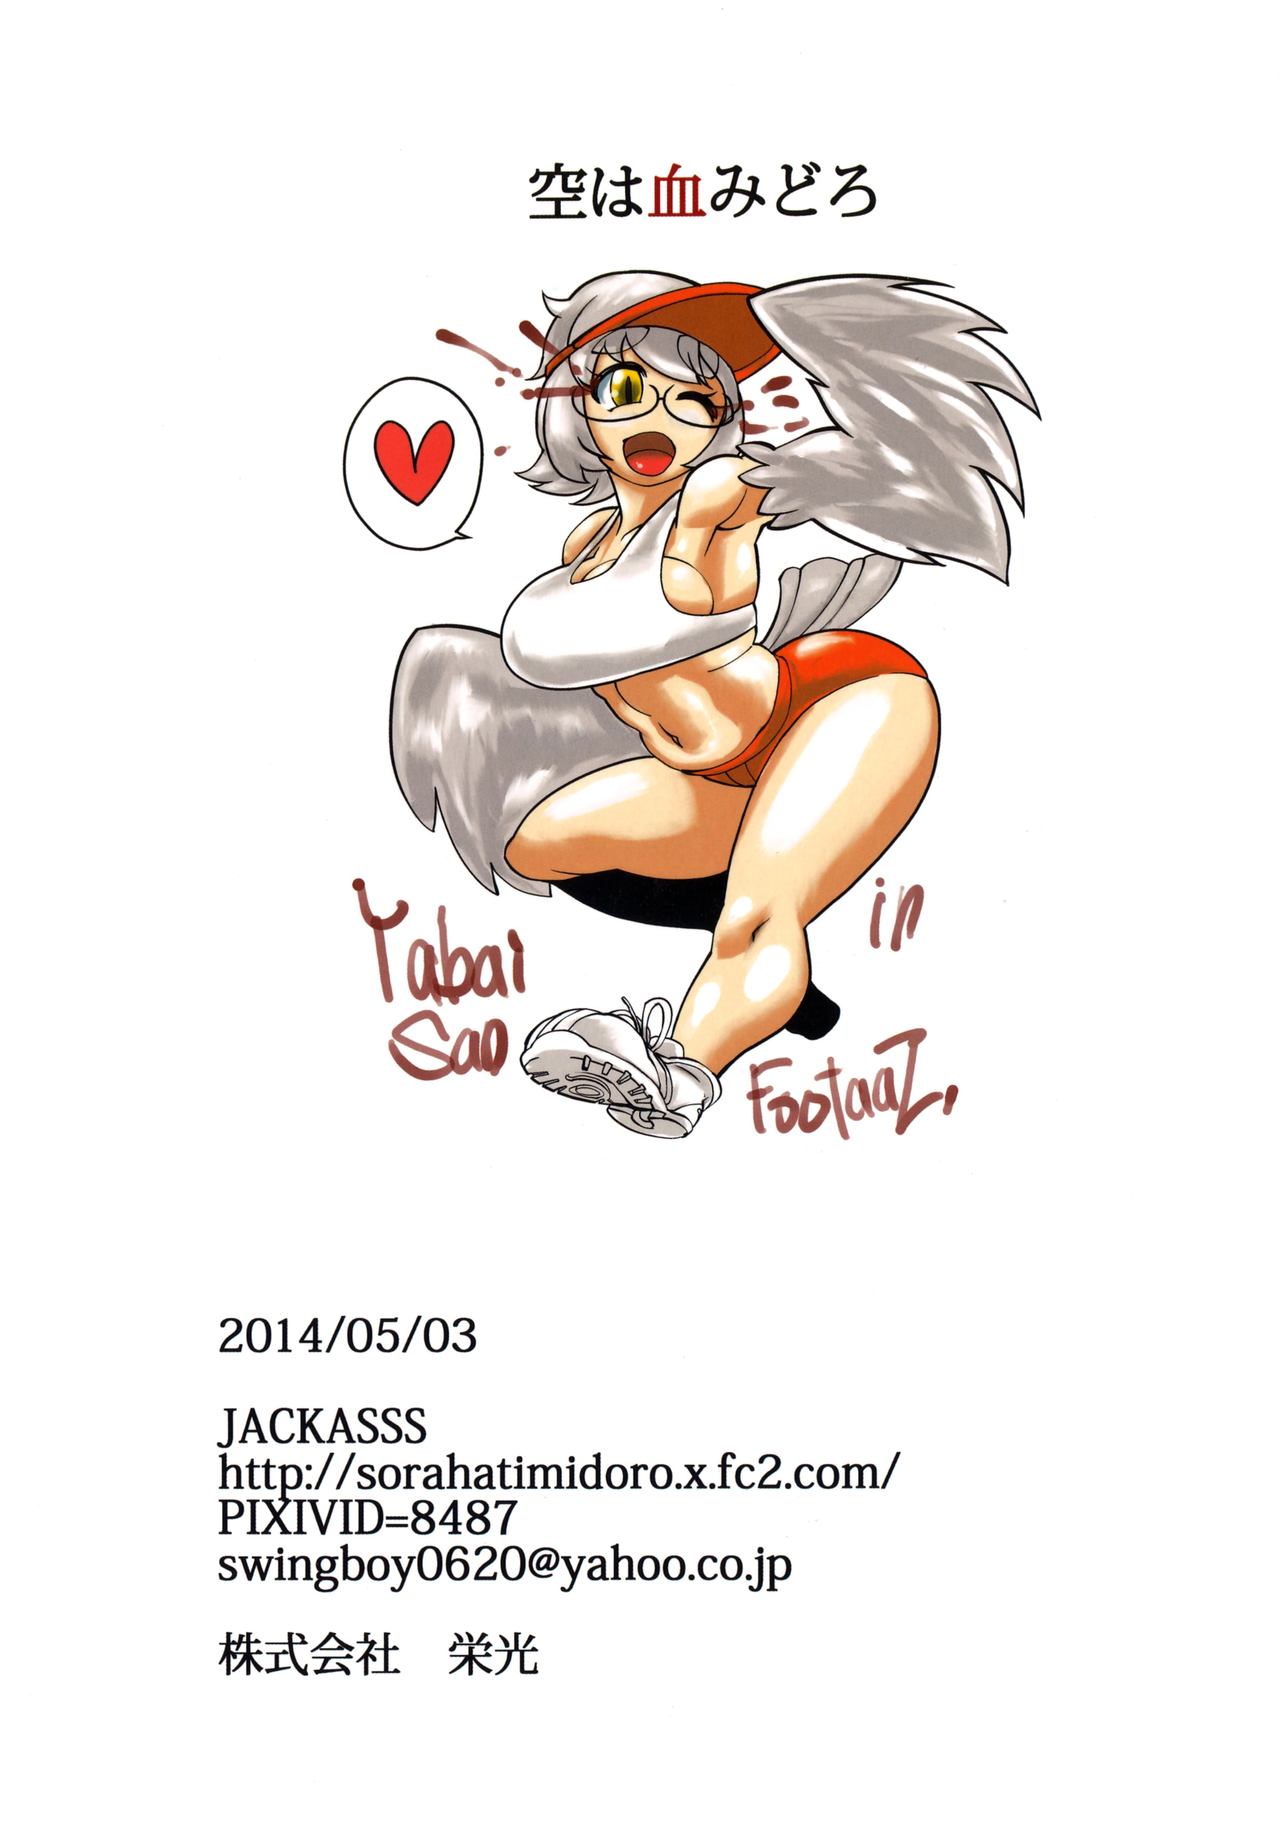 (Futaba Gakuensai 9) [Sora Ha Chimidoro (Jackasss)] Yabaisan in footaas (ふたば学園祭9) [空は血みどろ (JACKASSS)] ヤバいさん in footaas